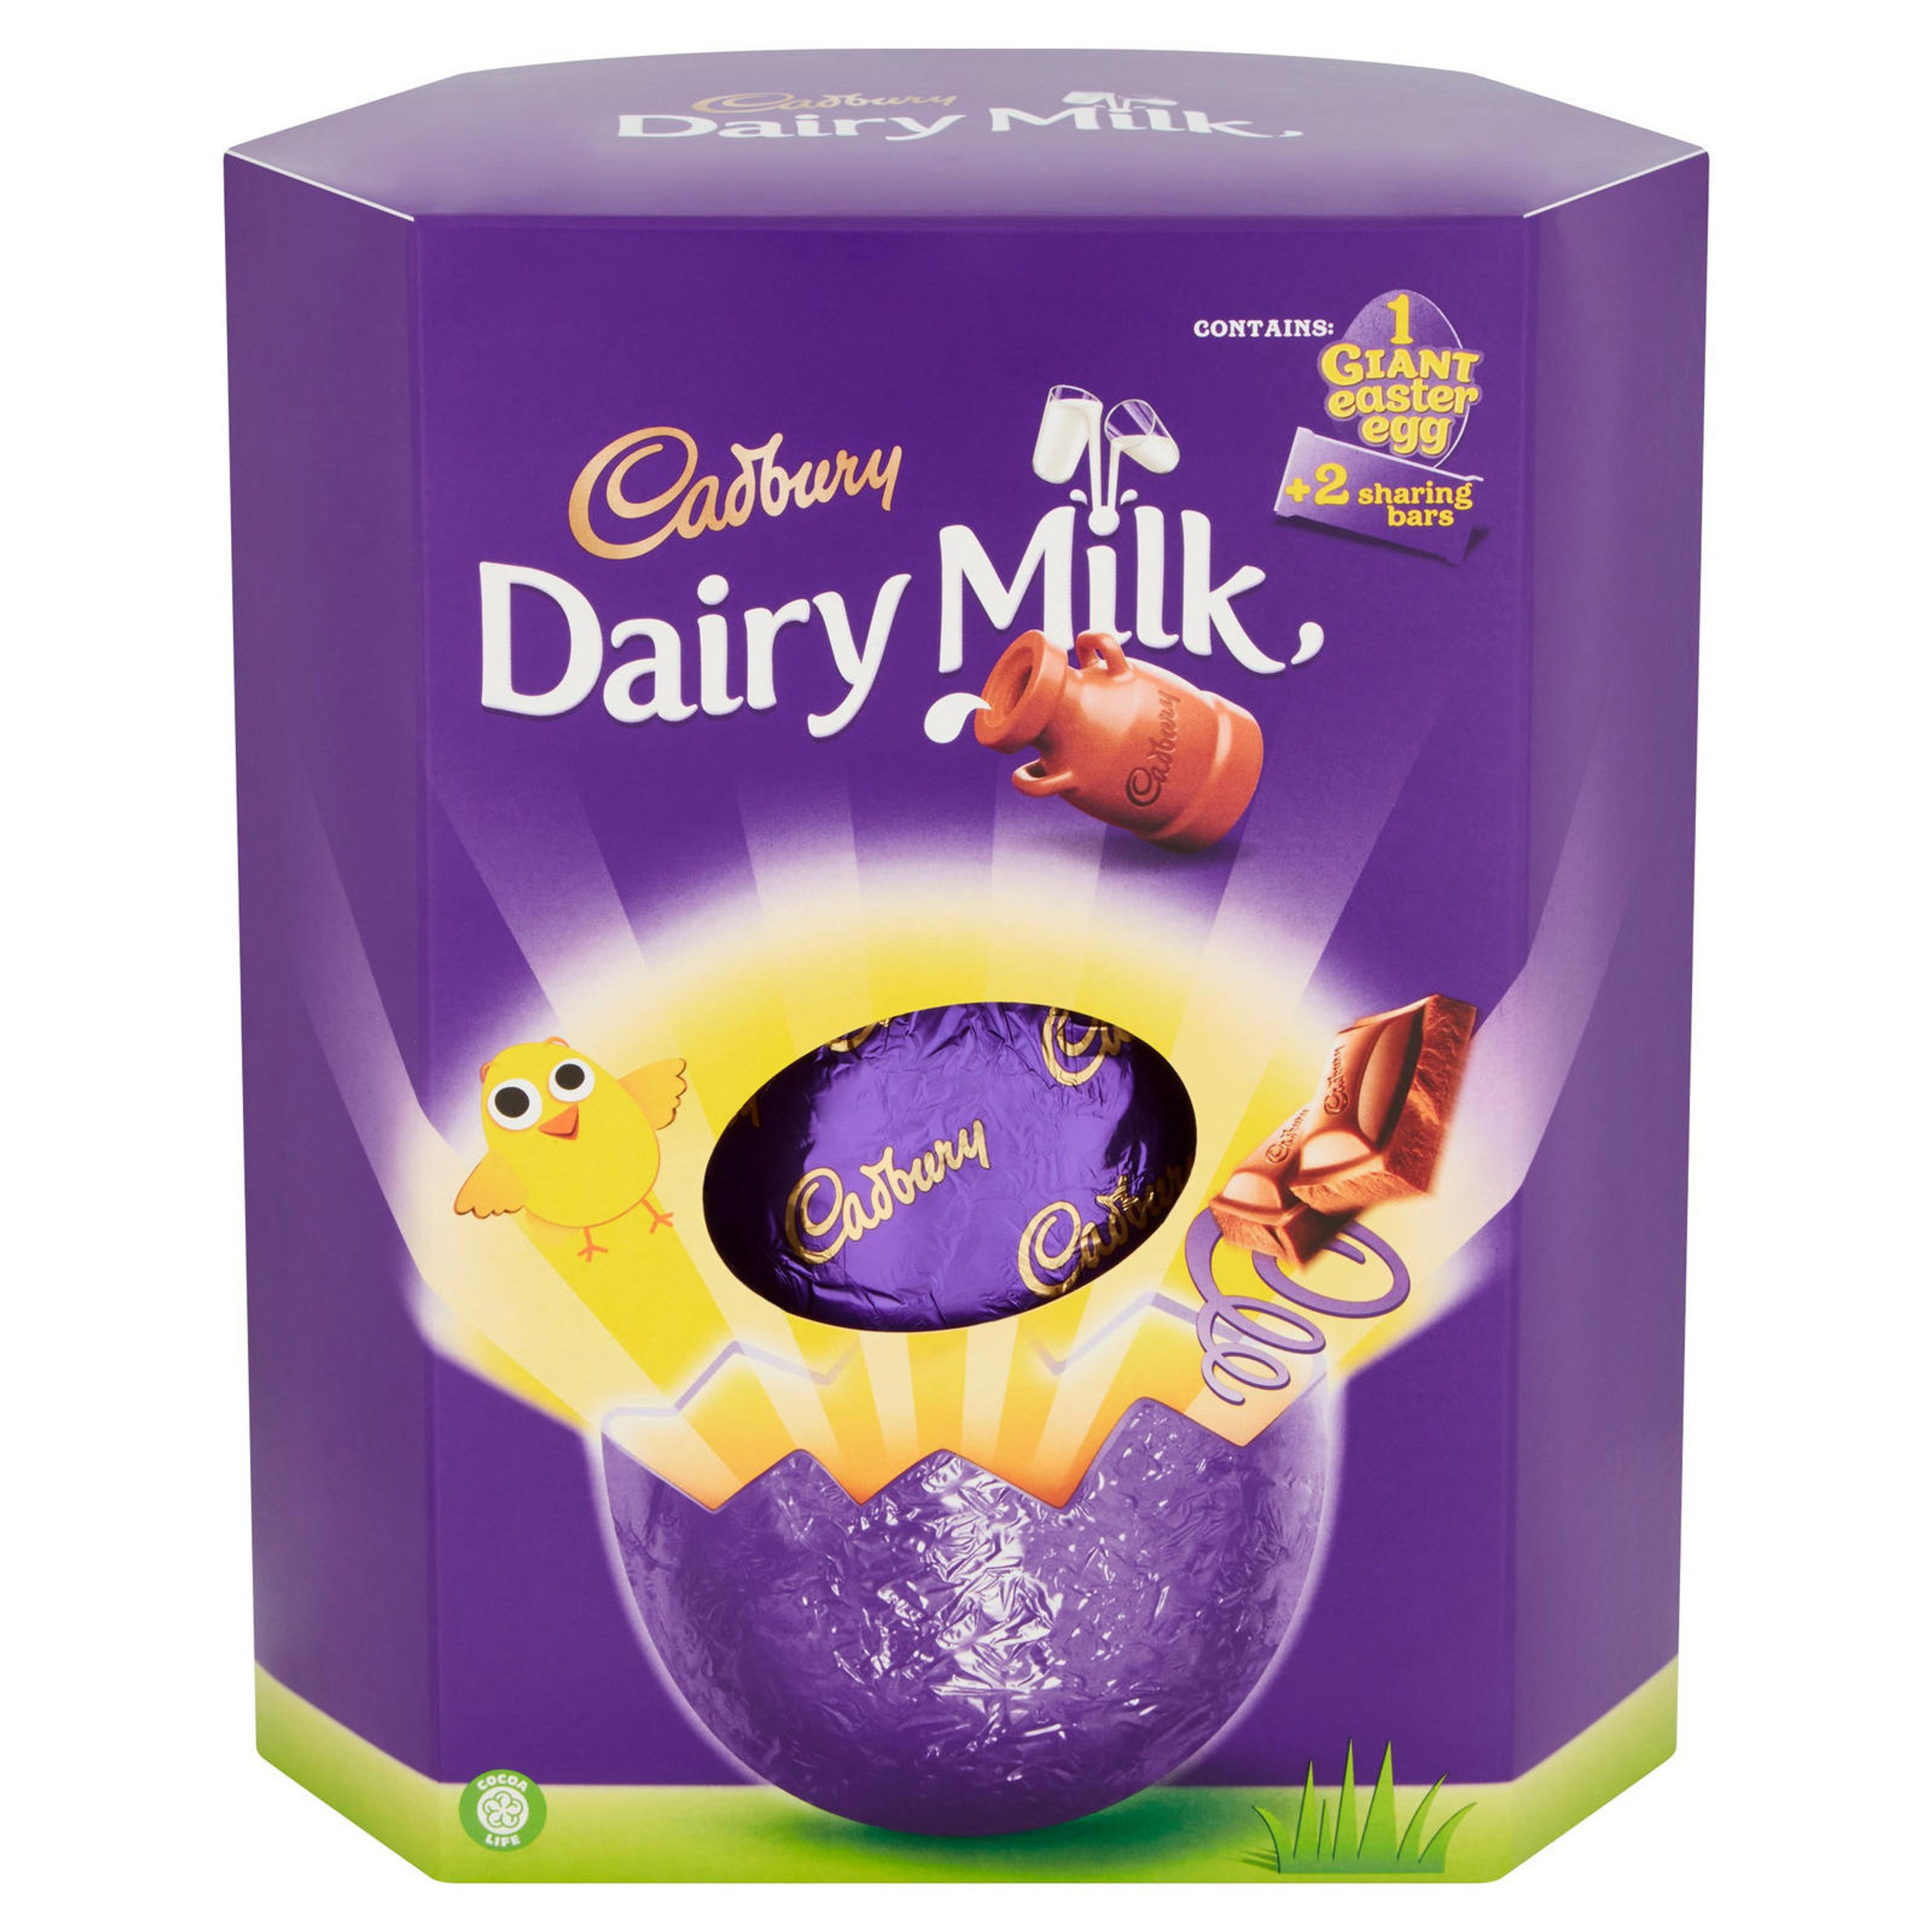 Cadbury Dairy Milk Giant Easter Egg 515g in Easter